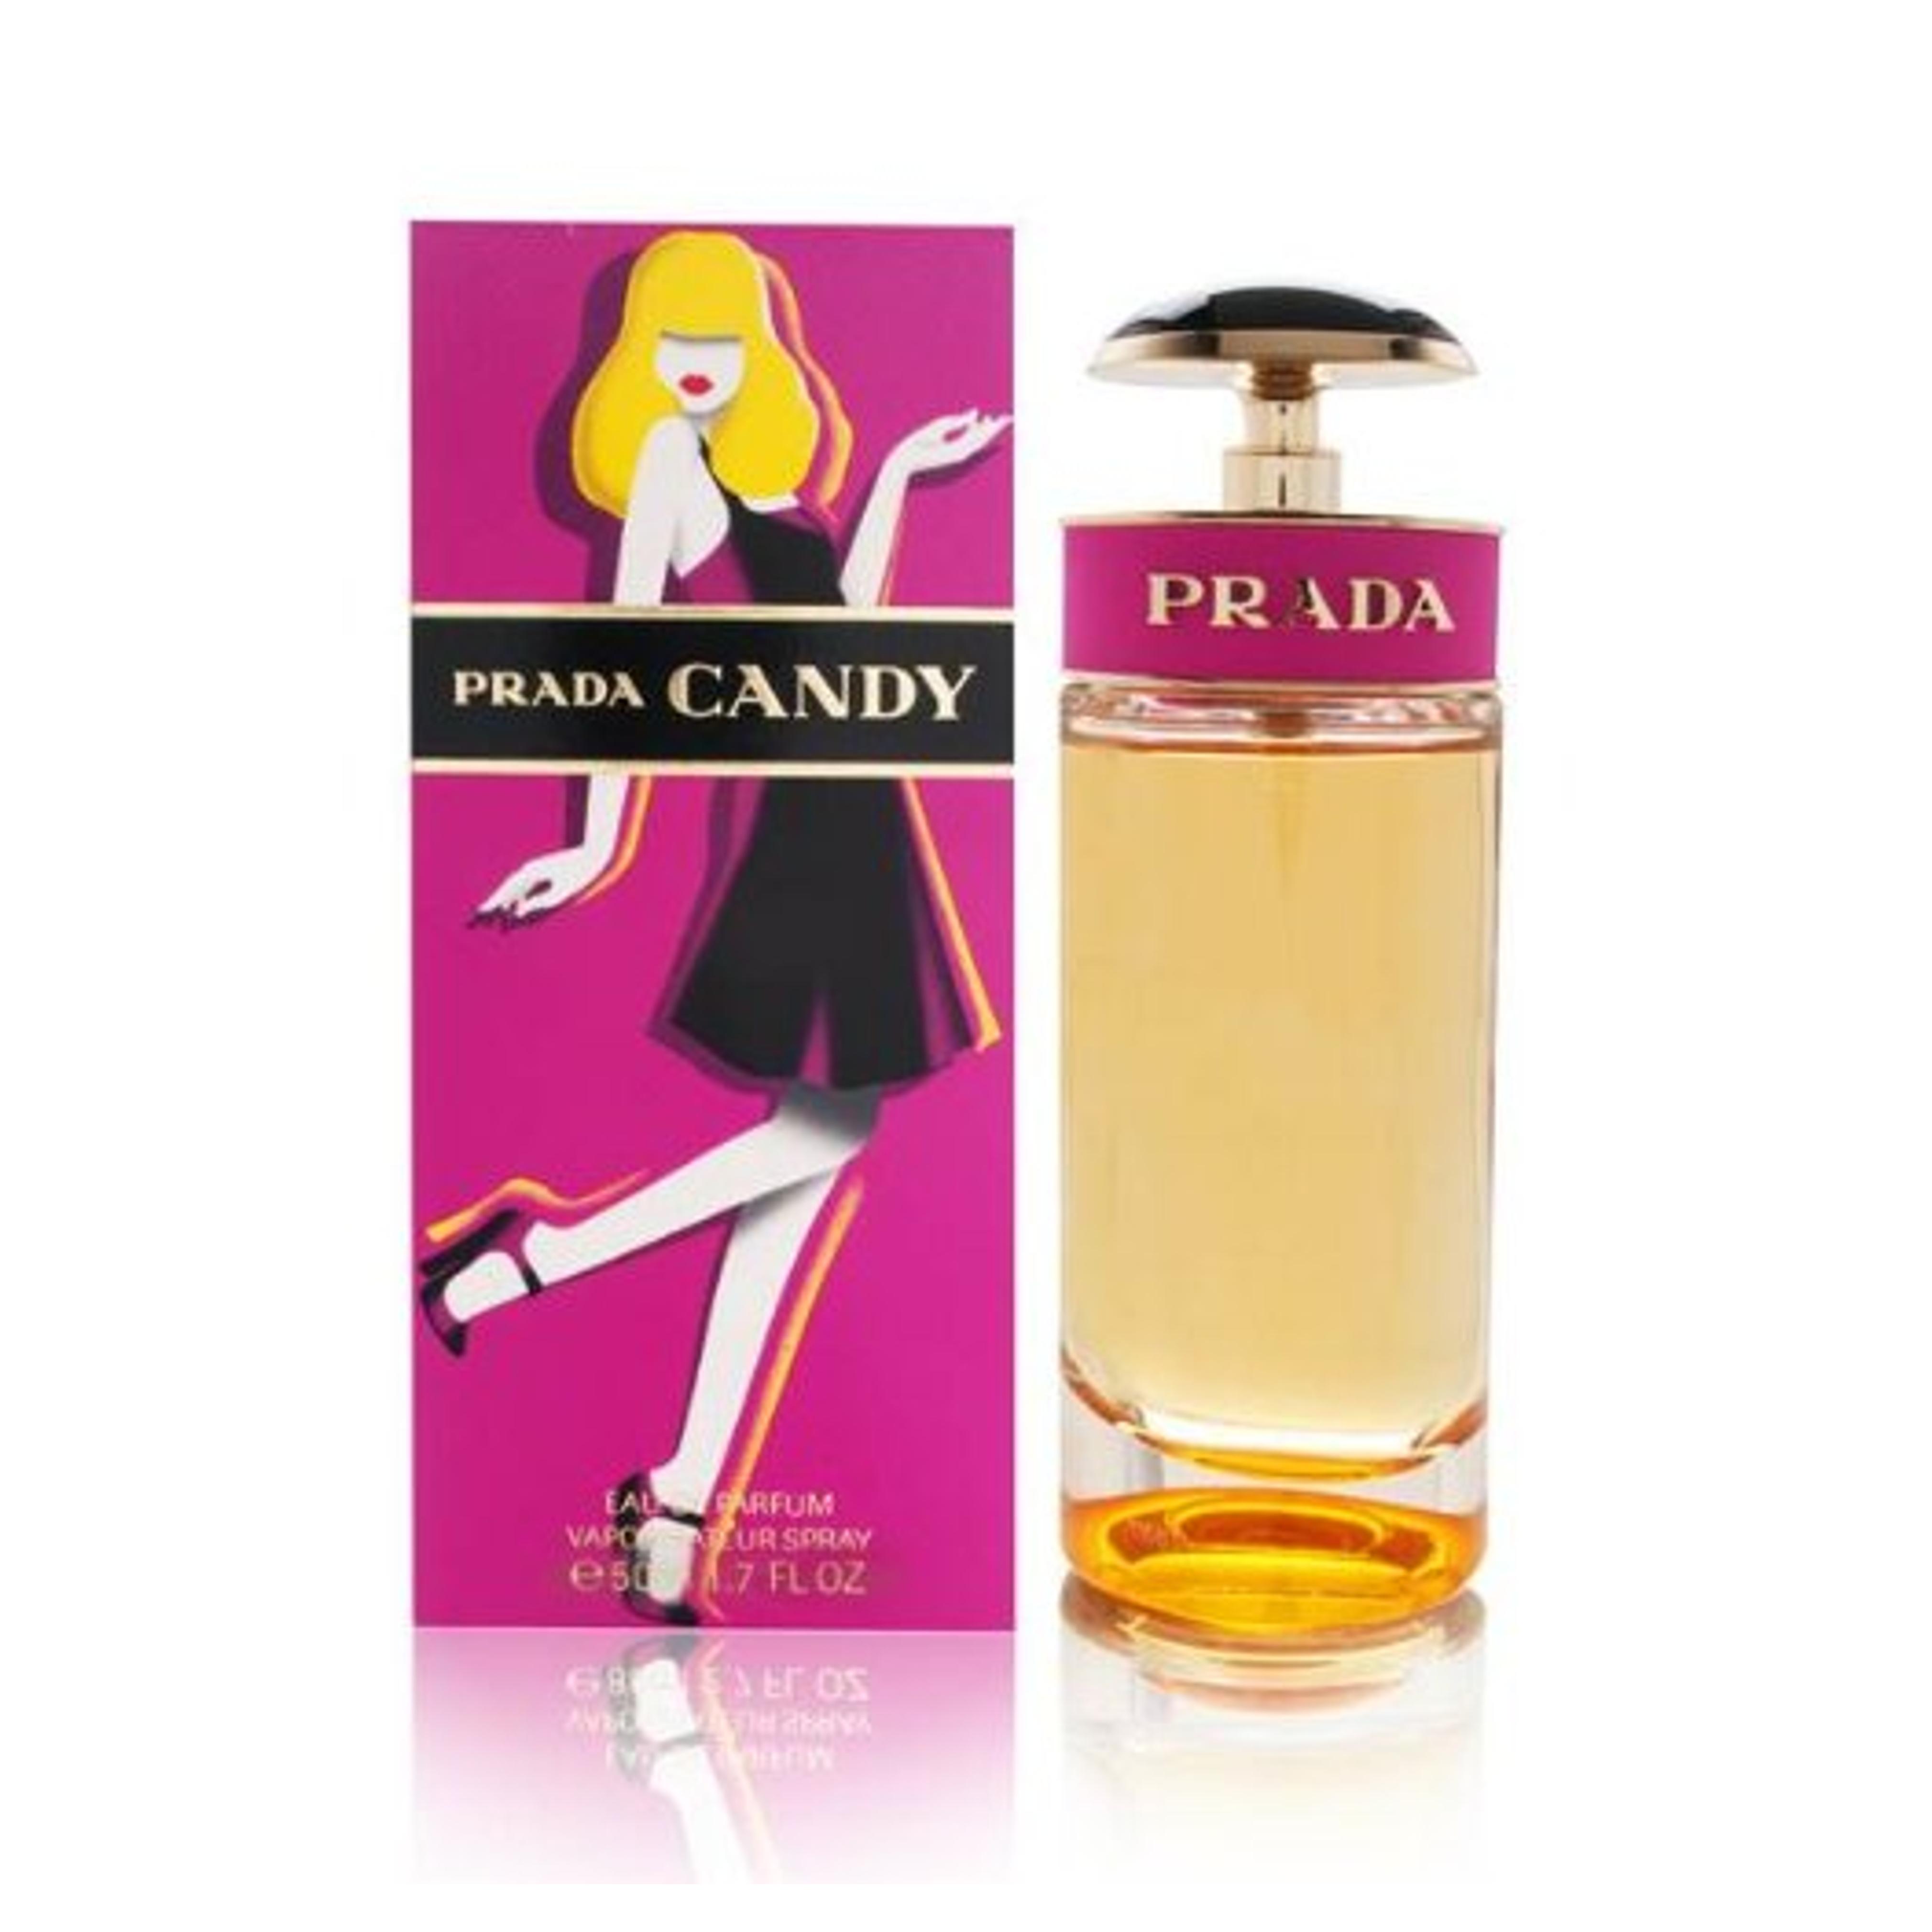 Prada Candy by Prada for Women 1.7 oz Eau de Parfum Spray